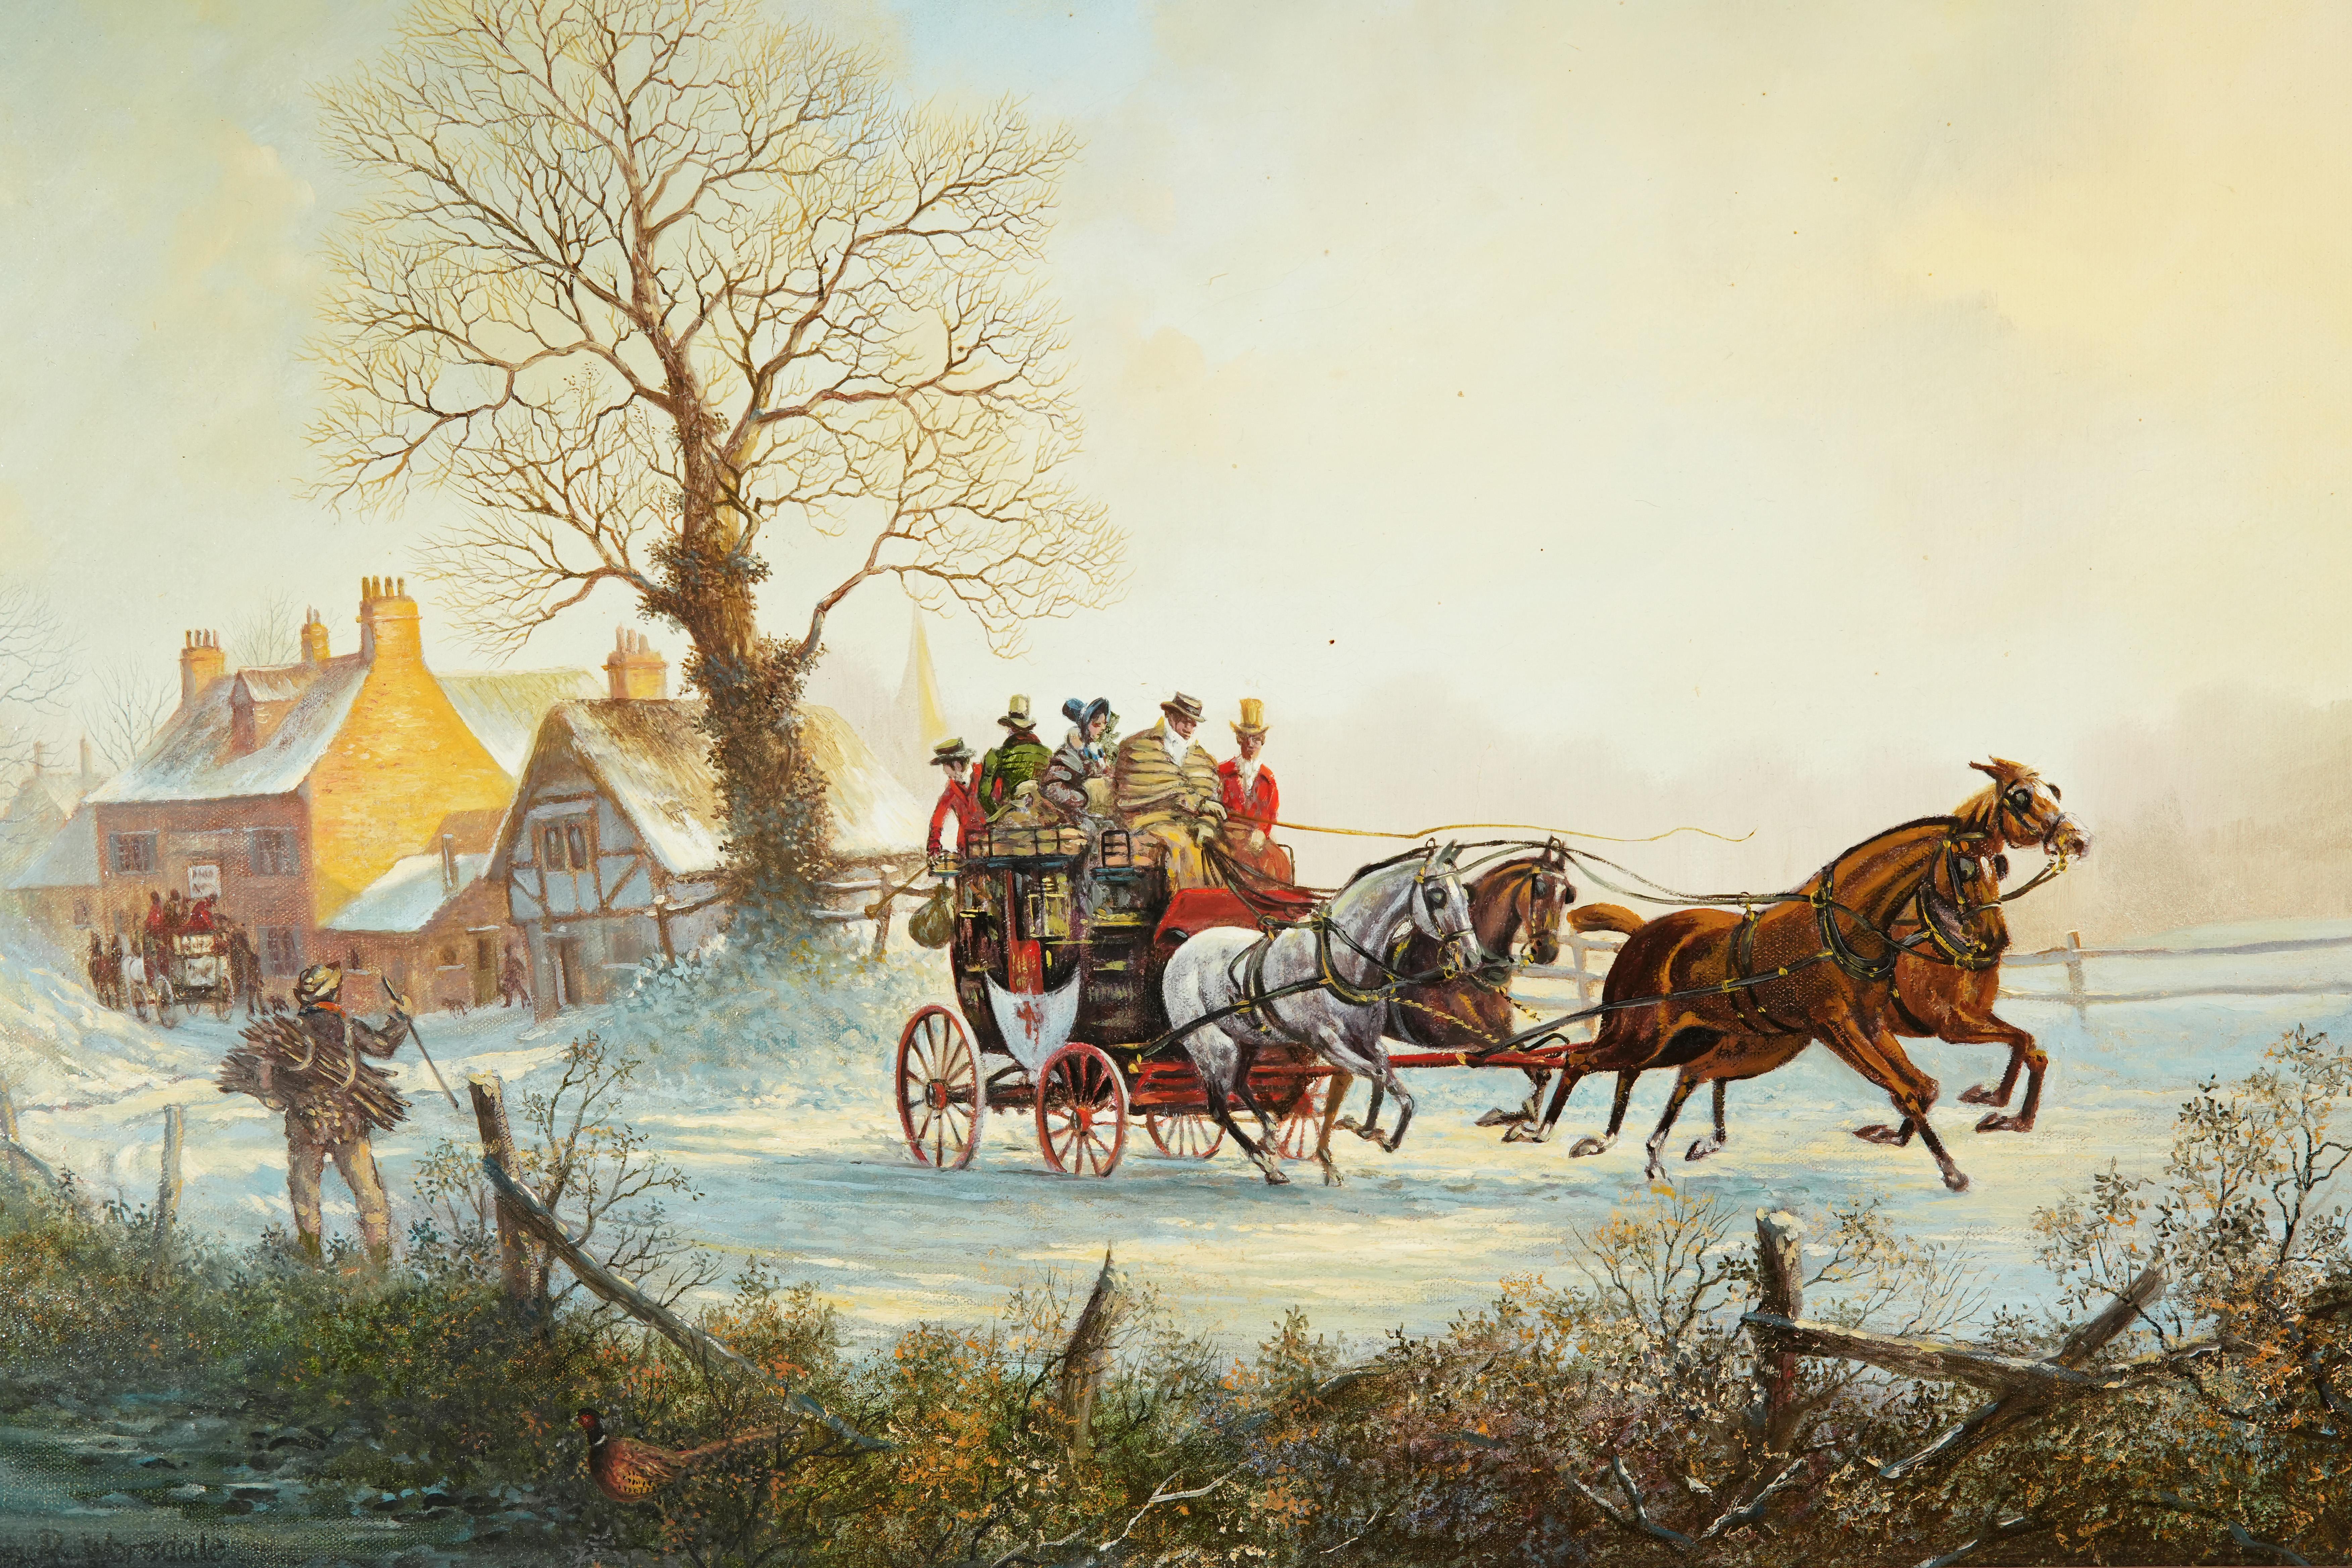 Belle peinture à l'huile ancienne représentant des chevaux tirant une diligence dans la neige, par John-Richard Worsdale (1869-1947).
L'artiste dépeint cette scène puissante avec une vue étendue, mettant en scène la diligence tirée par 4 chevaux 
et